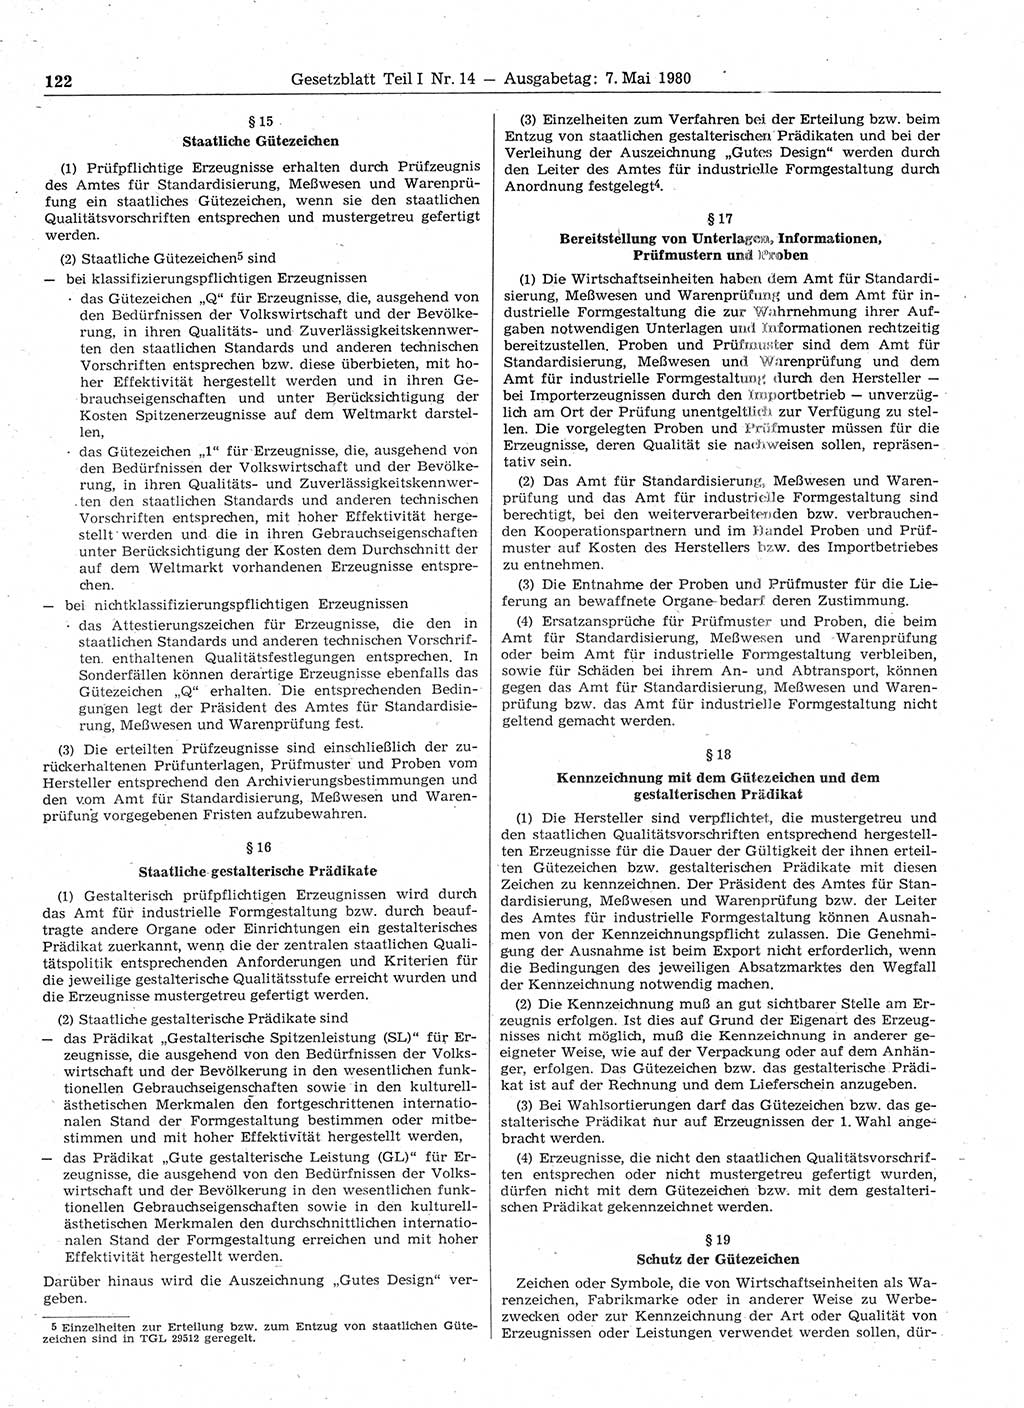 Gesetzblatt (GBl.) der Deutschen Demokratischen Republik (DDR) Teil Ⅰ 1980, Seite 122 (GBl. DDR Ⅰ 1980, S. 122)